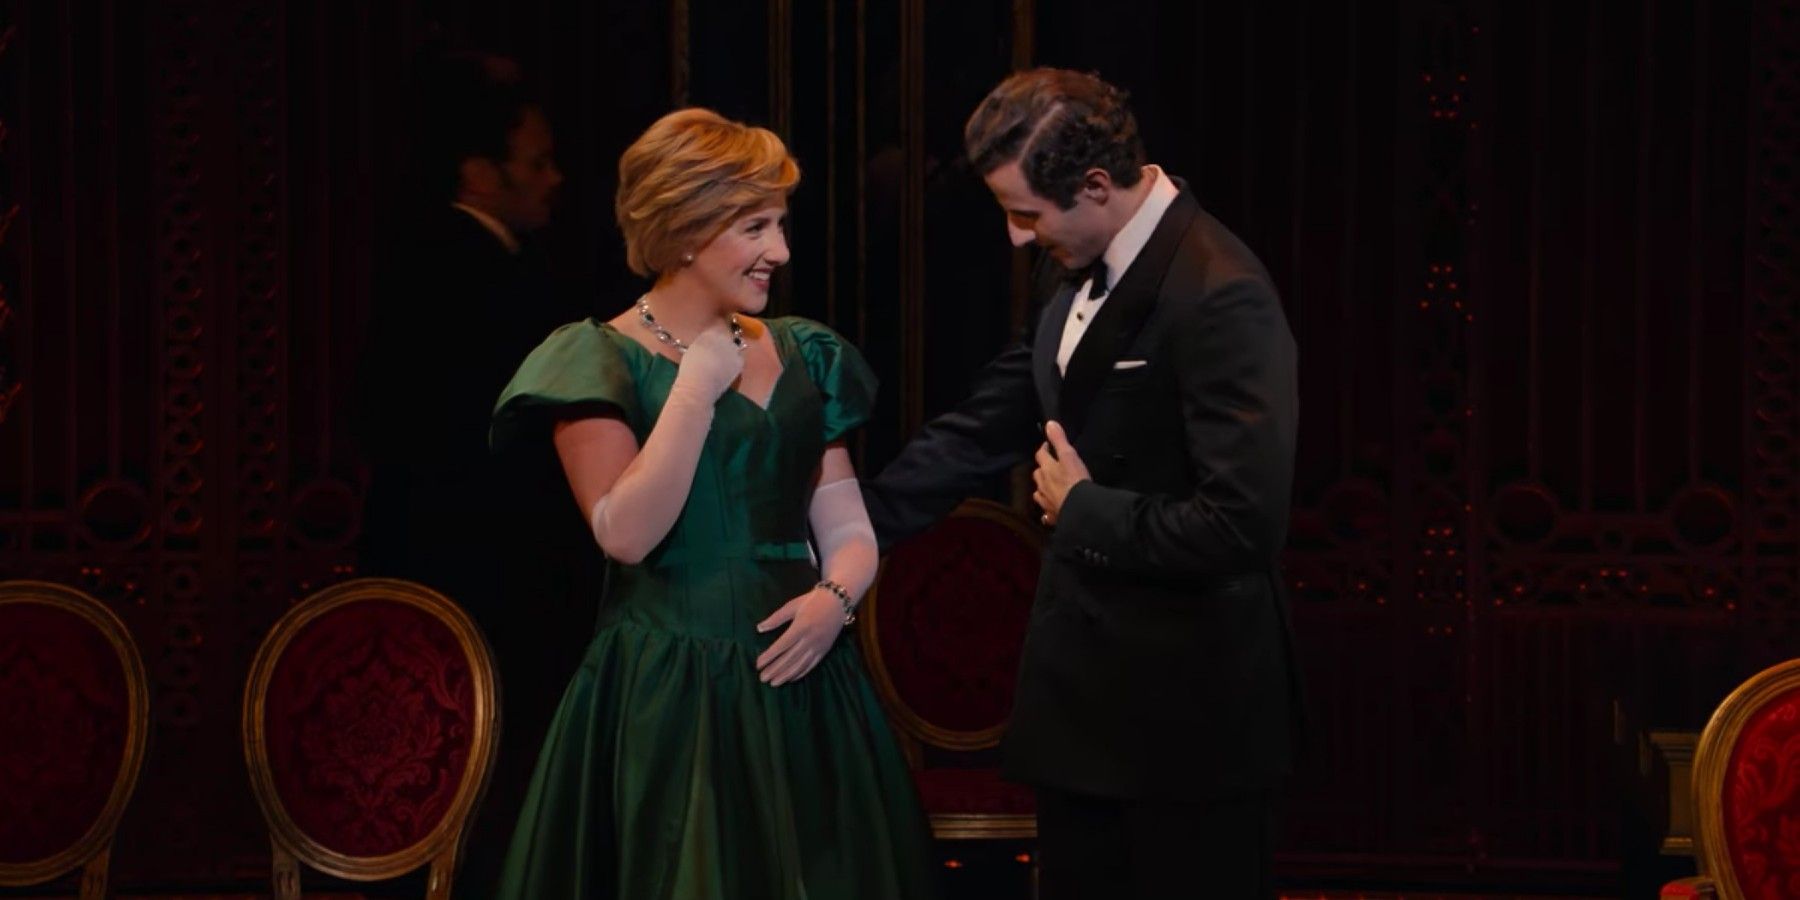 Diana and Charles at an opera.